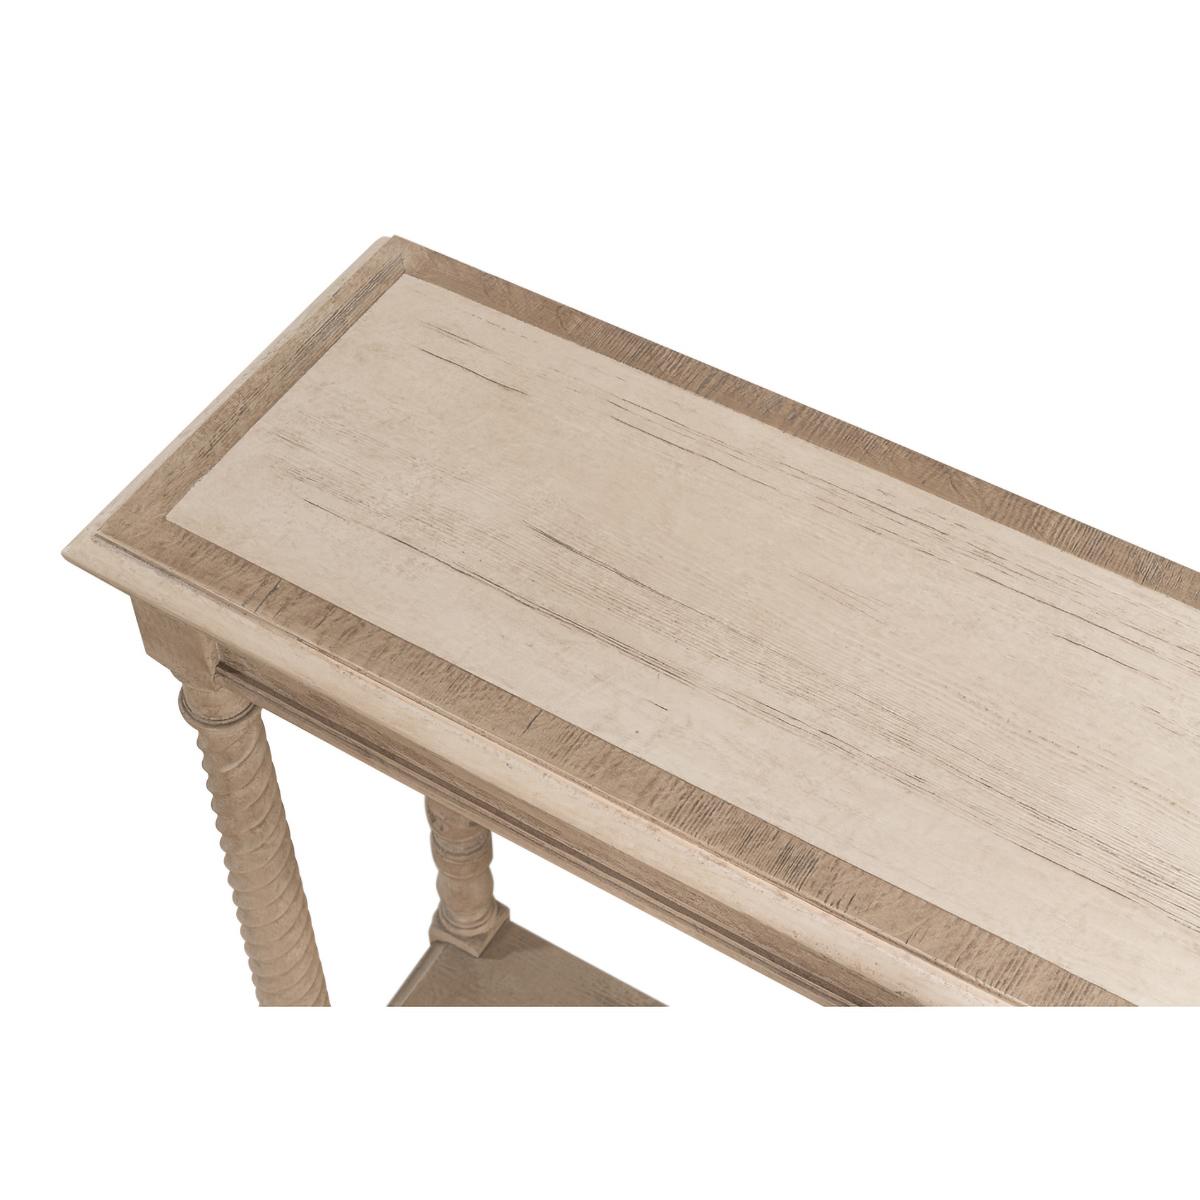 Table console néo-classique en pin avec notre finition gris grange, le plateau incrusté de losanges et de bandes croisées avec un bord mouluré au-dessus de six pieds fuselés sculptés en spirale sur une base de brancard d'étagère.

Dimensions : 80